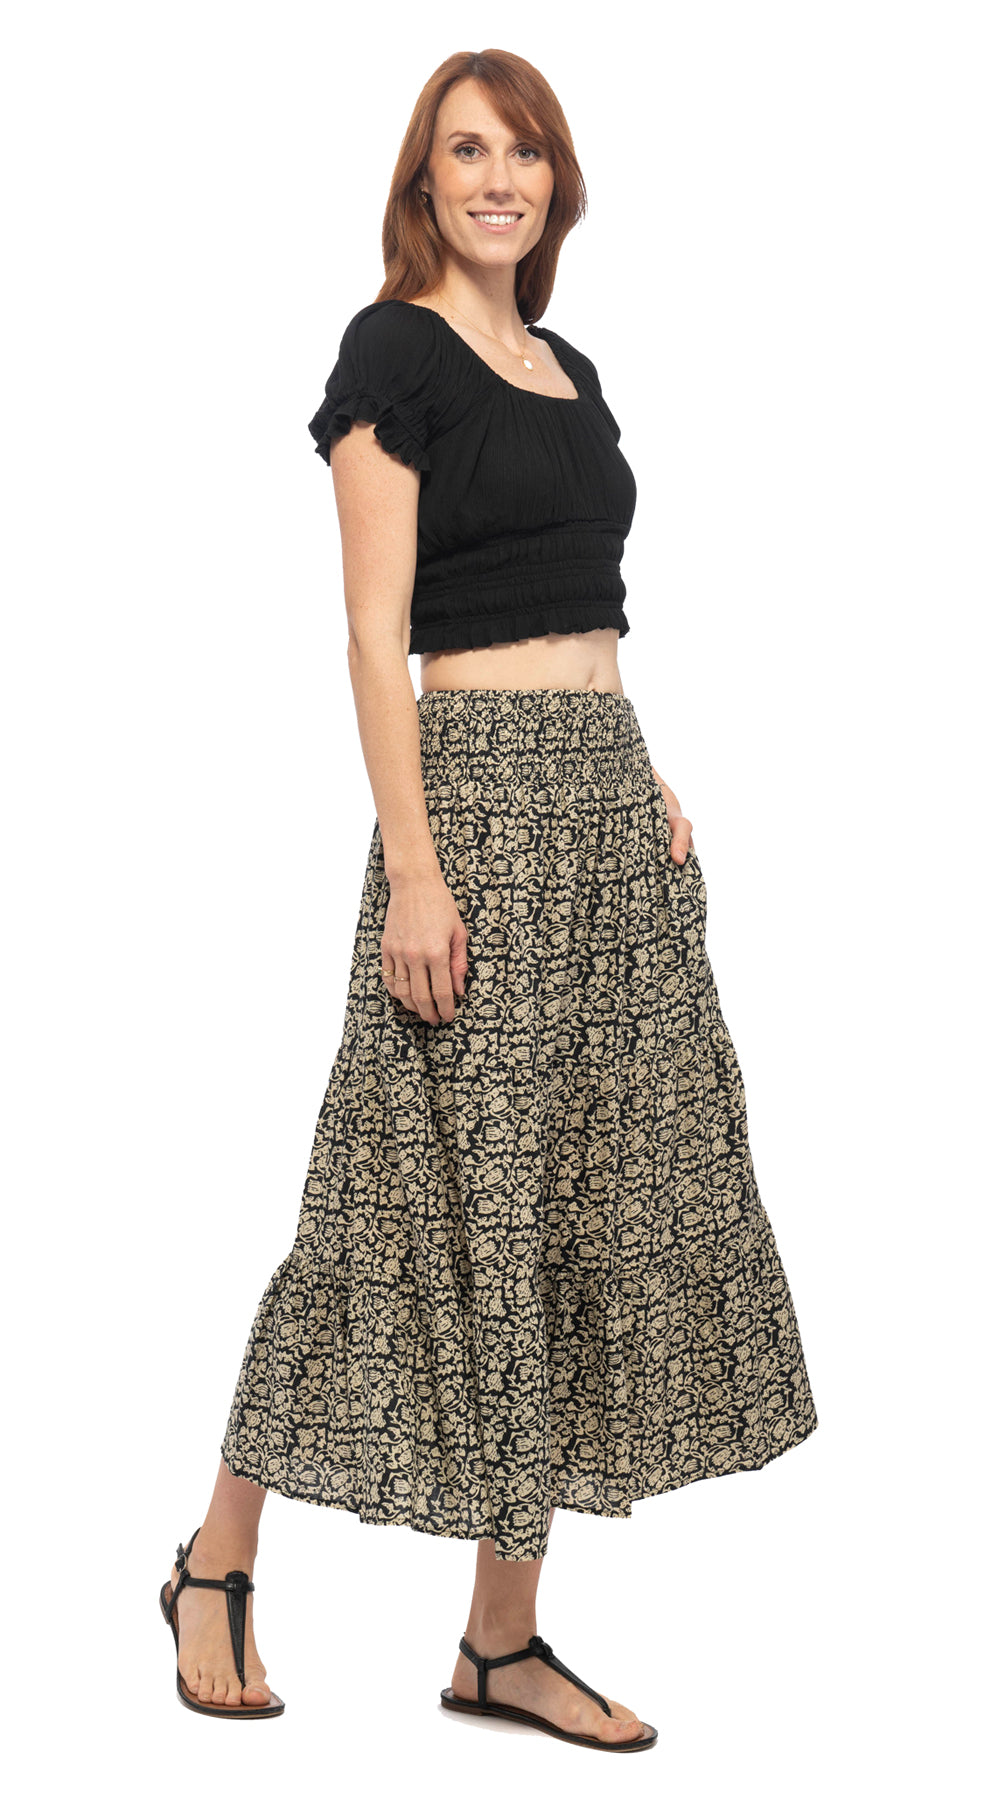 Ariel Skirt - gold blockprint - organic cotton